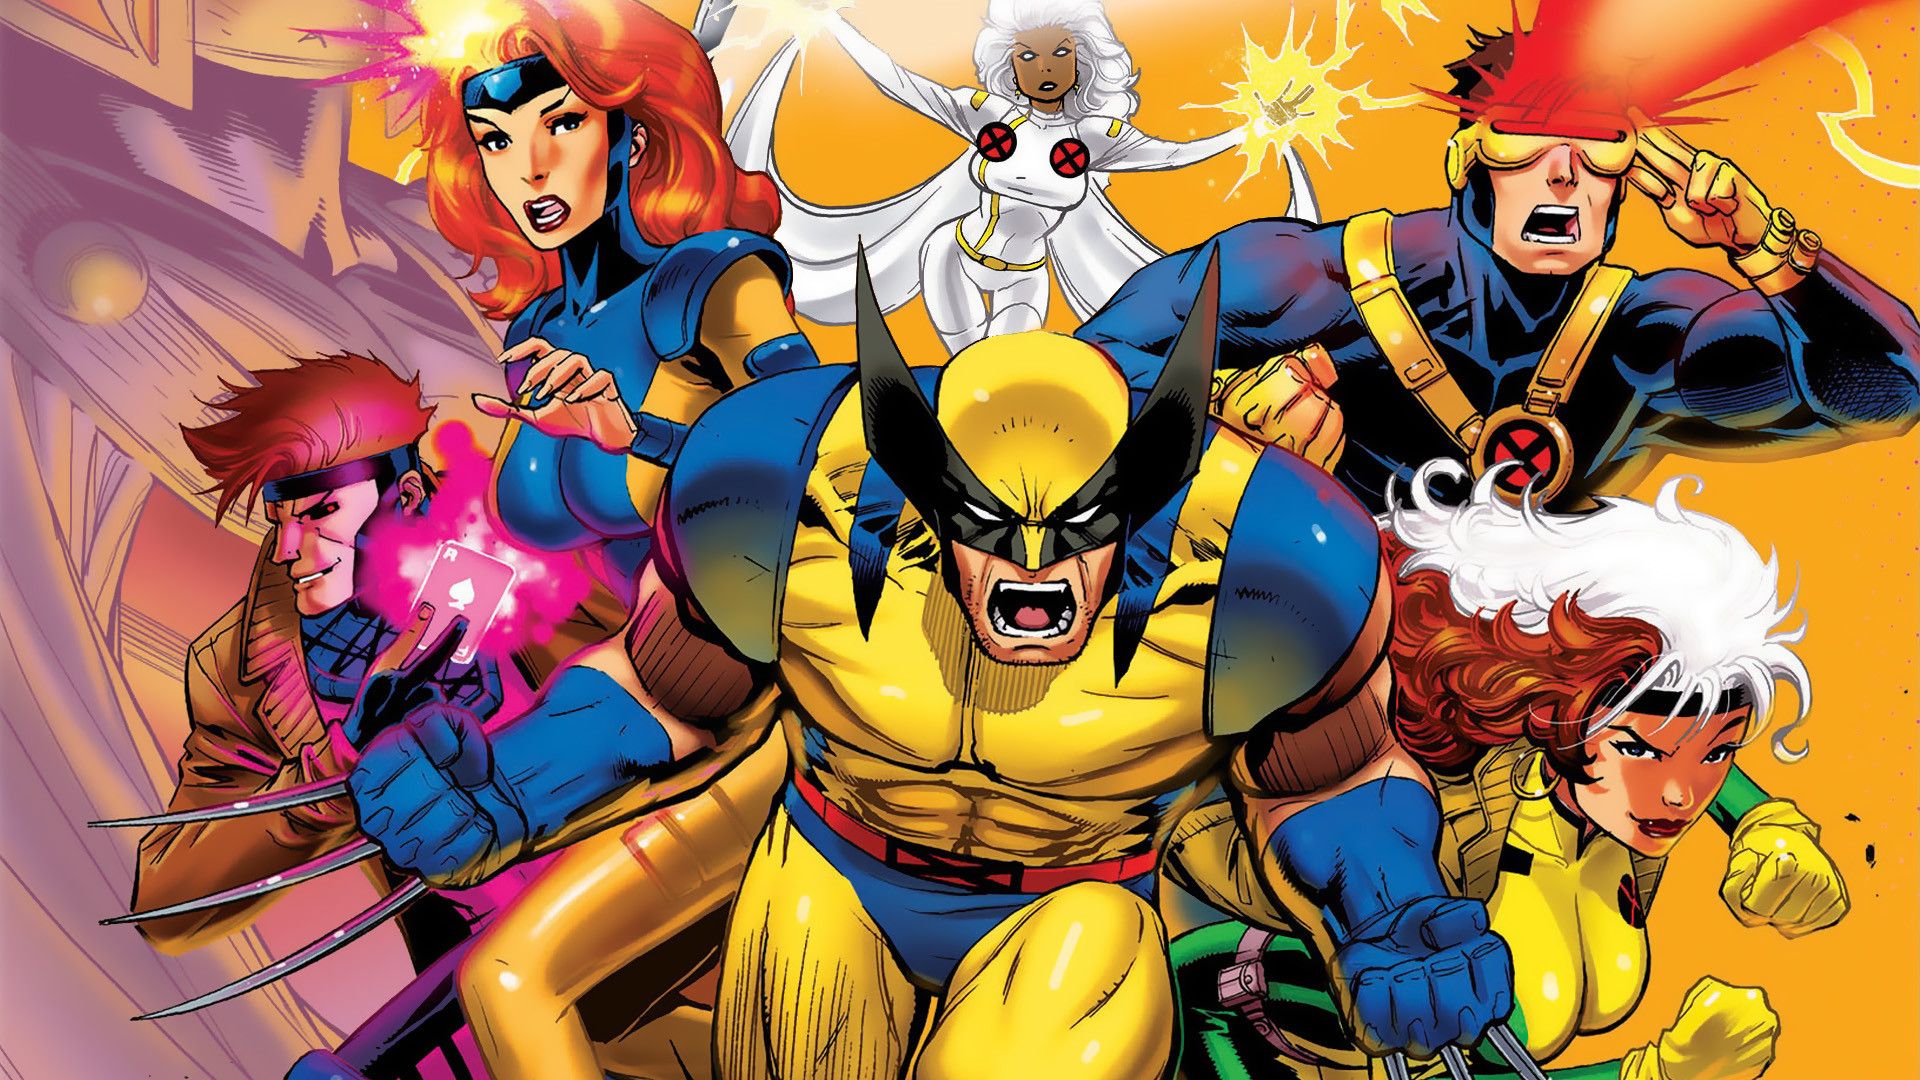 X Men: Nếu bạn là fan của bộ truyện tranh nổi tiếng X Men thì hãy xem bức ảnh này để cảm nhận lại không khí huyền thoại của nhóm siêu anh hùng này.